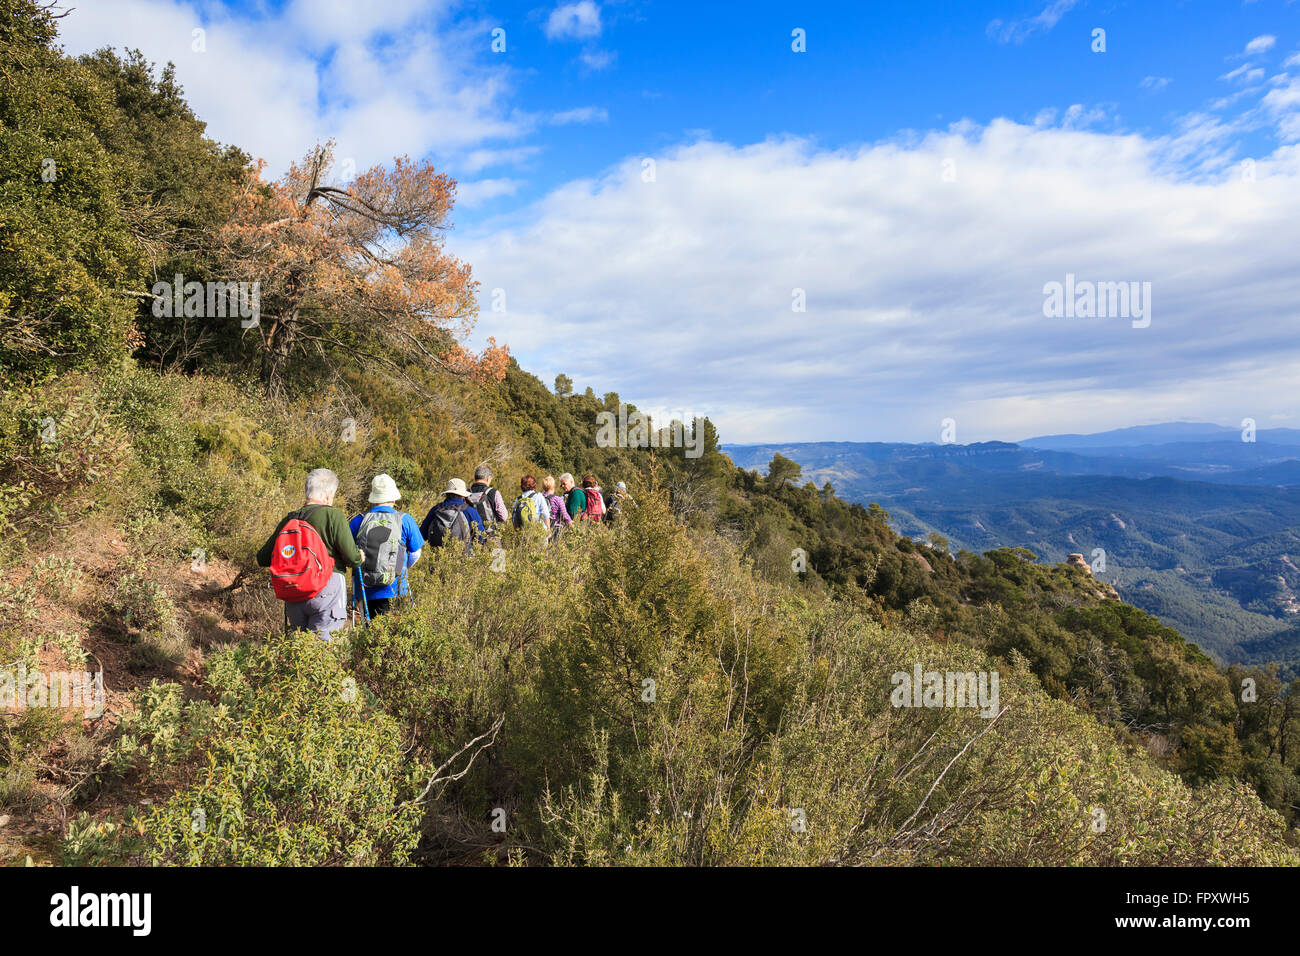 Gruppe von Wanderern zu Fuß. Sant Llorenc del Munt ich Naturpark Serra de l'Obac. Provinz Barcelona. Katalonien. Spanien. Stockfoto